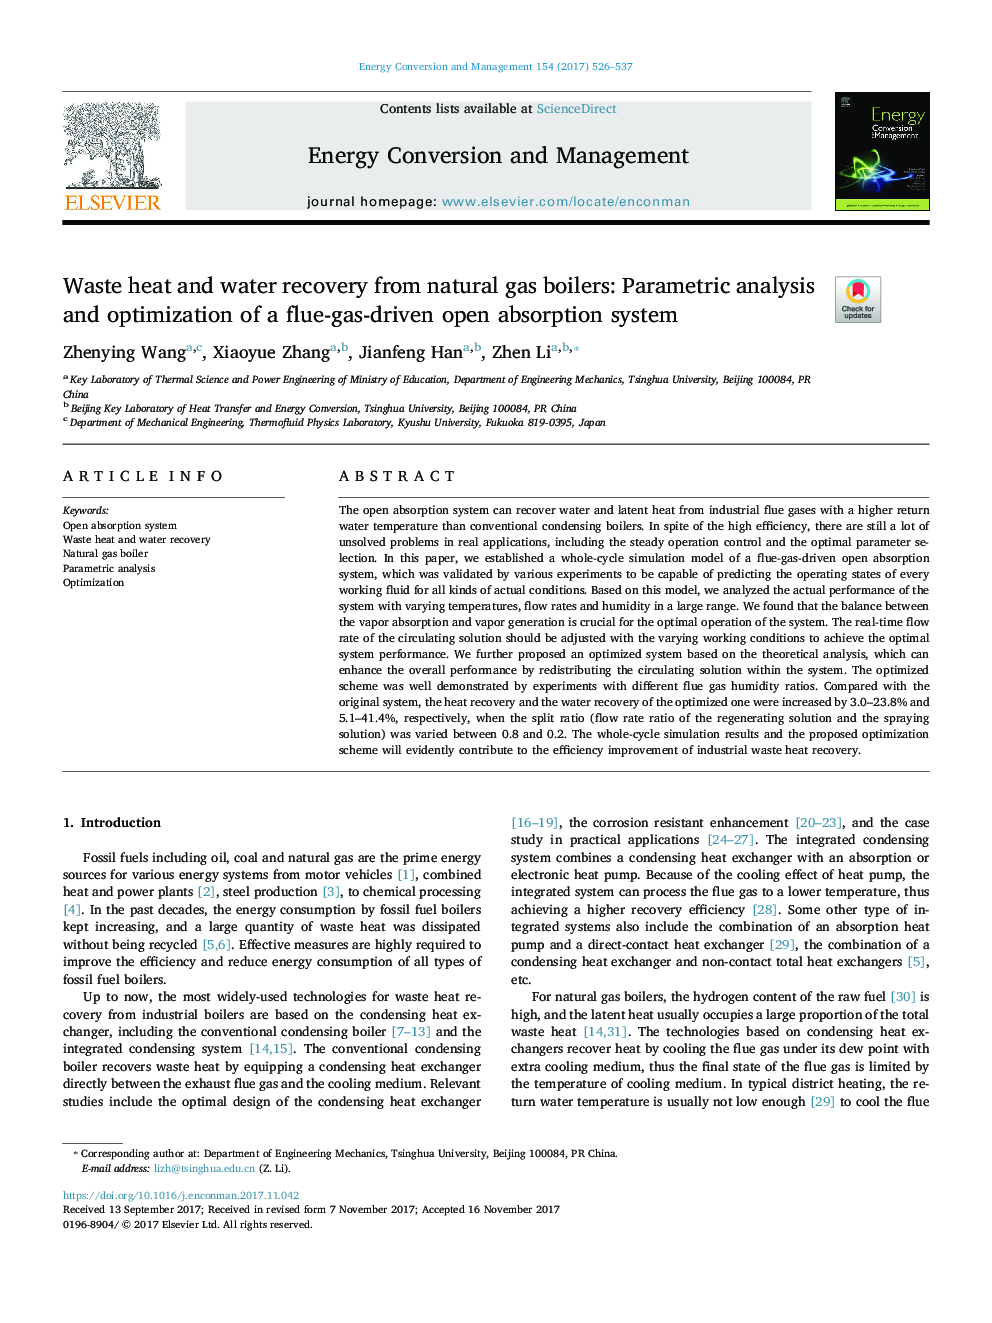 بازیافت حرارت و آب بازیافت از دیگهای گاز طبیعی: تجزیه و تحلیل پارامتری و بهینه سازی سیستم جذبی باز 